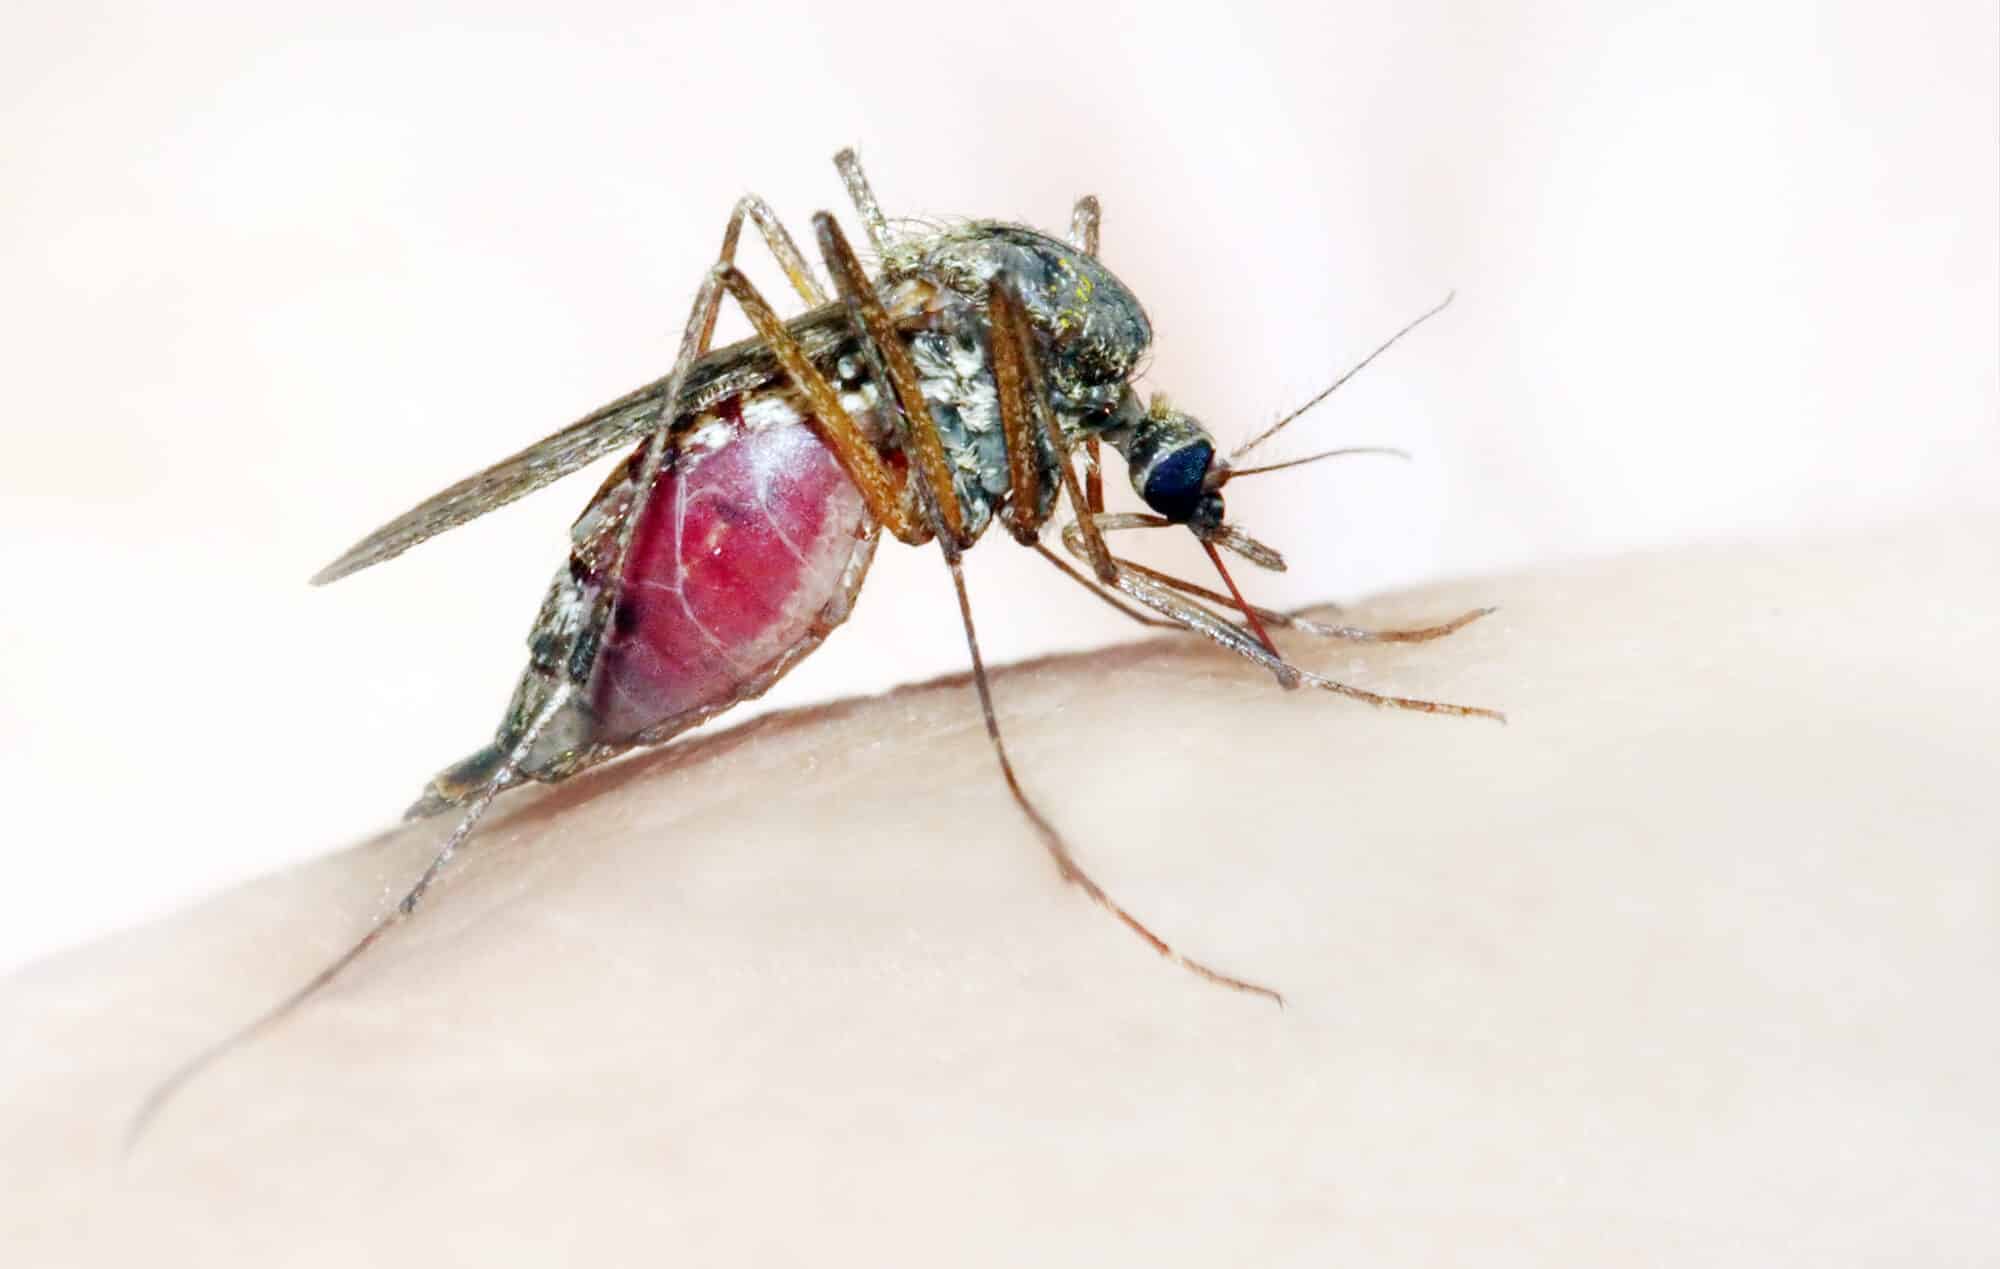 יתוש האנופלס, המעביר של מחלת המלריה.  <a href="https://depositphotos.com. ">איור: depositphotos.com</a>